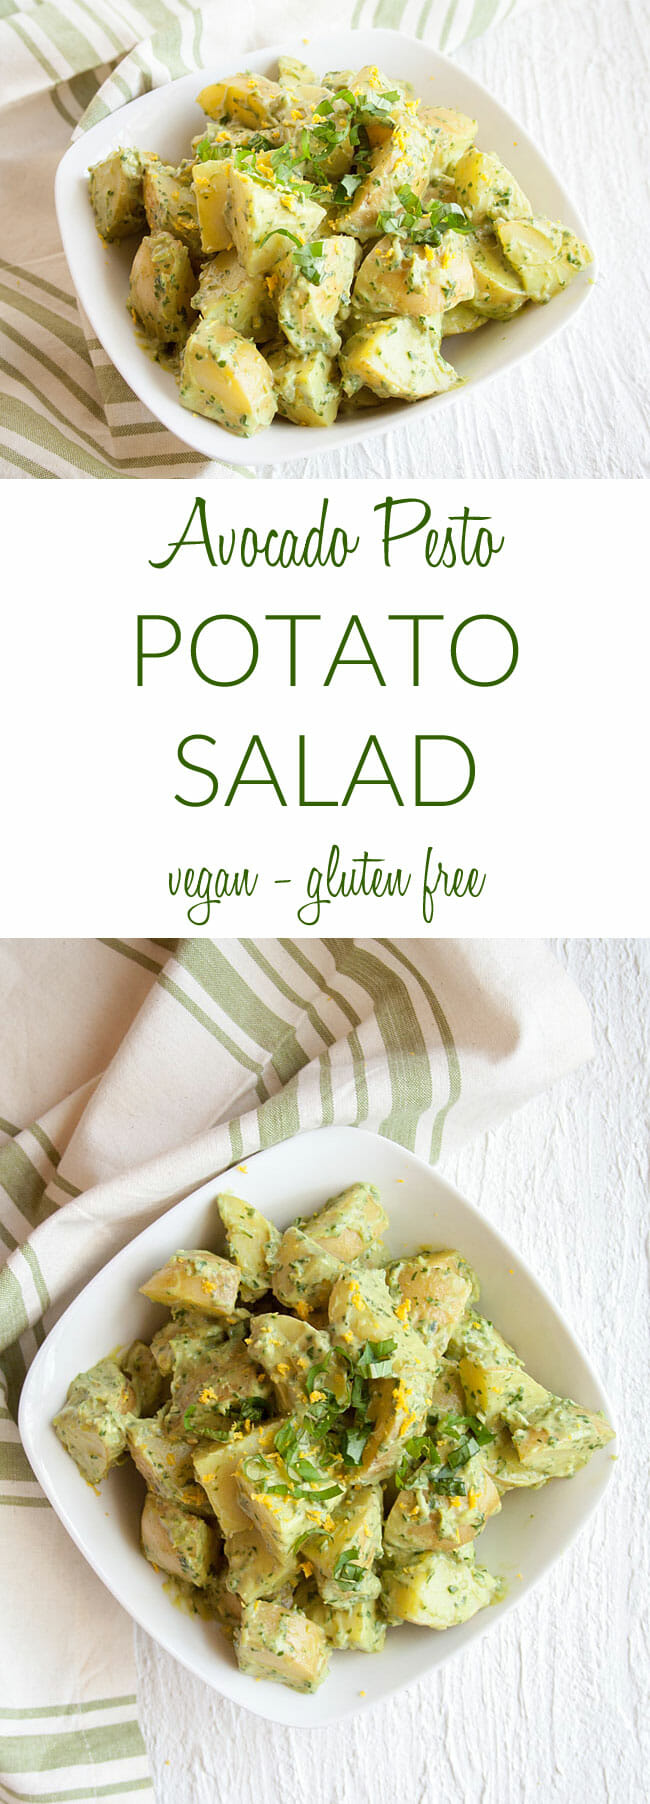 Pesto Potato Salad collage photo with text.